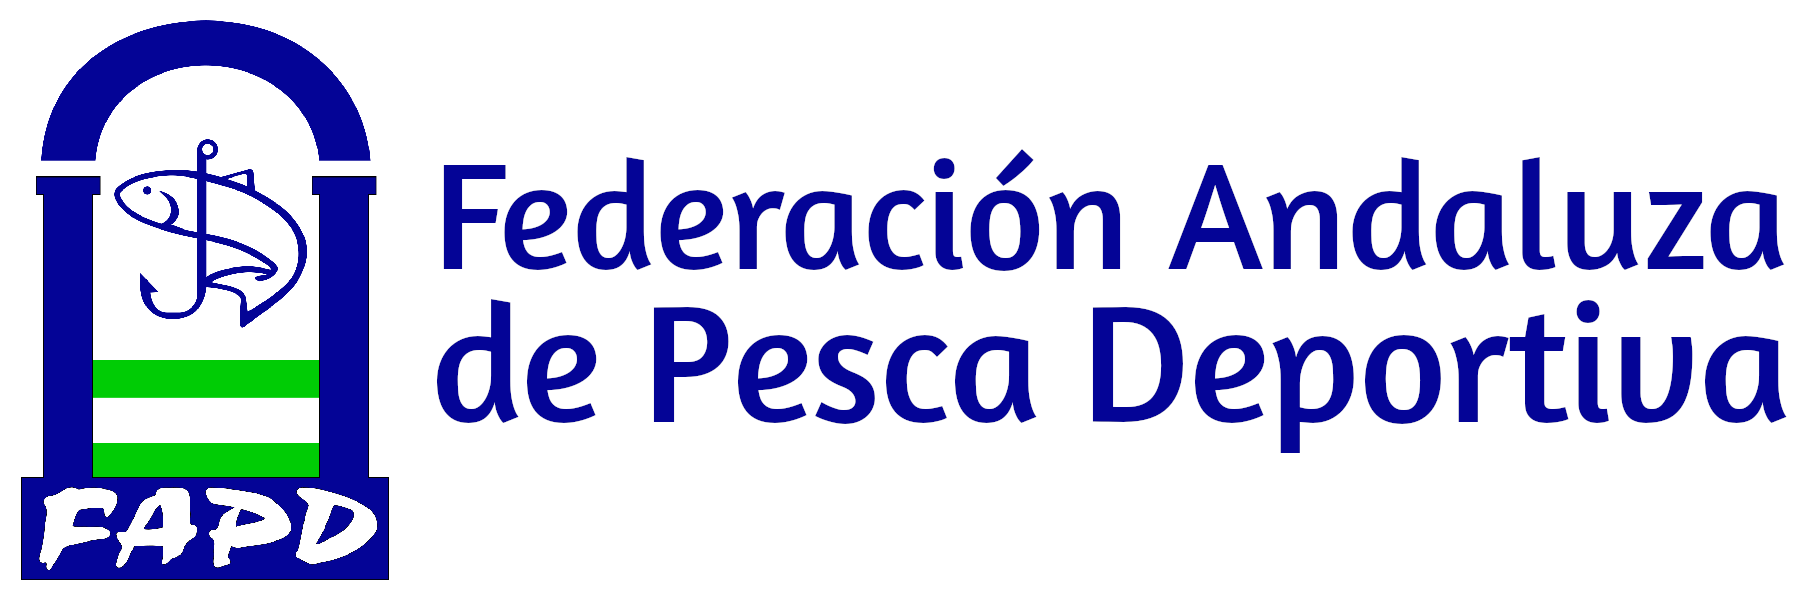 Federación Andaluza de Pesca Deportiva